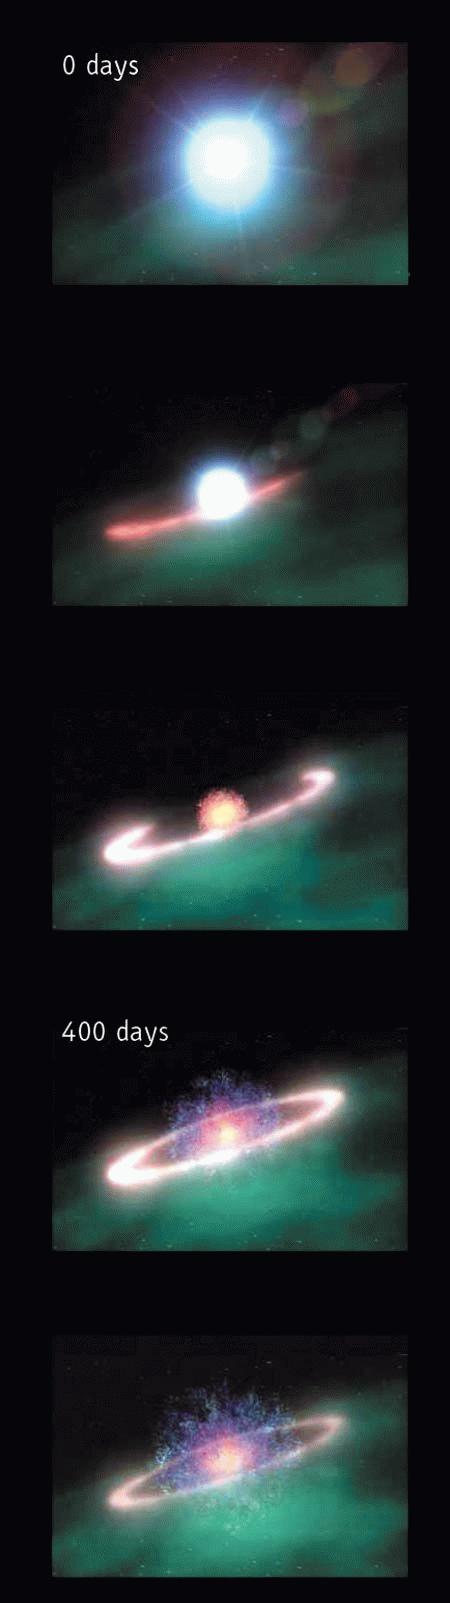 Medindo a distância da SN 1987A 0 dias Tarefa 4: Determinar o tempo transcorrido entre os instantes em que o anel começou a